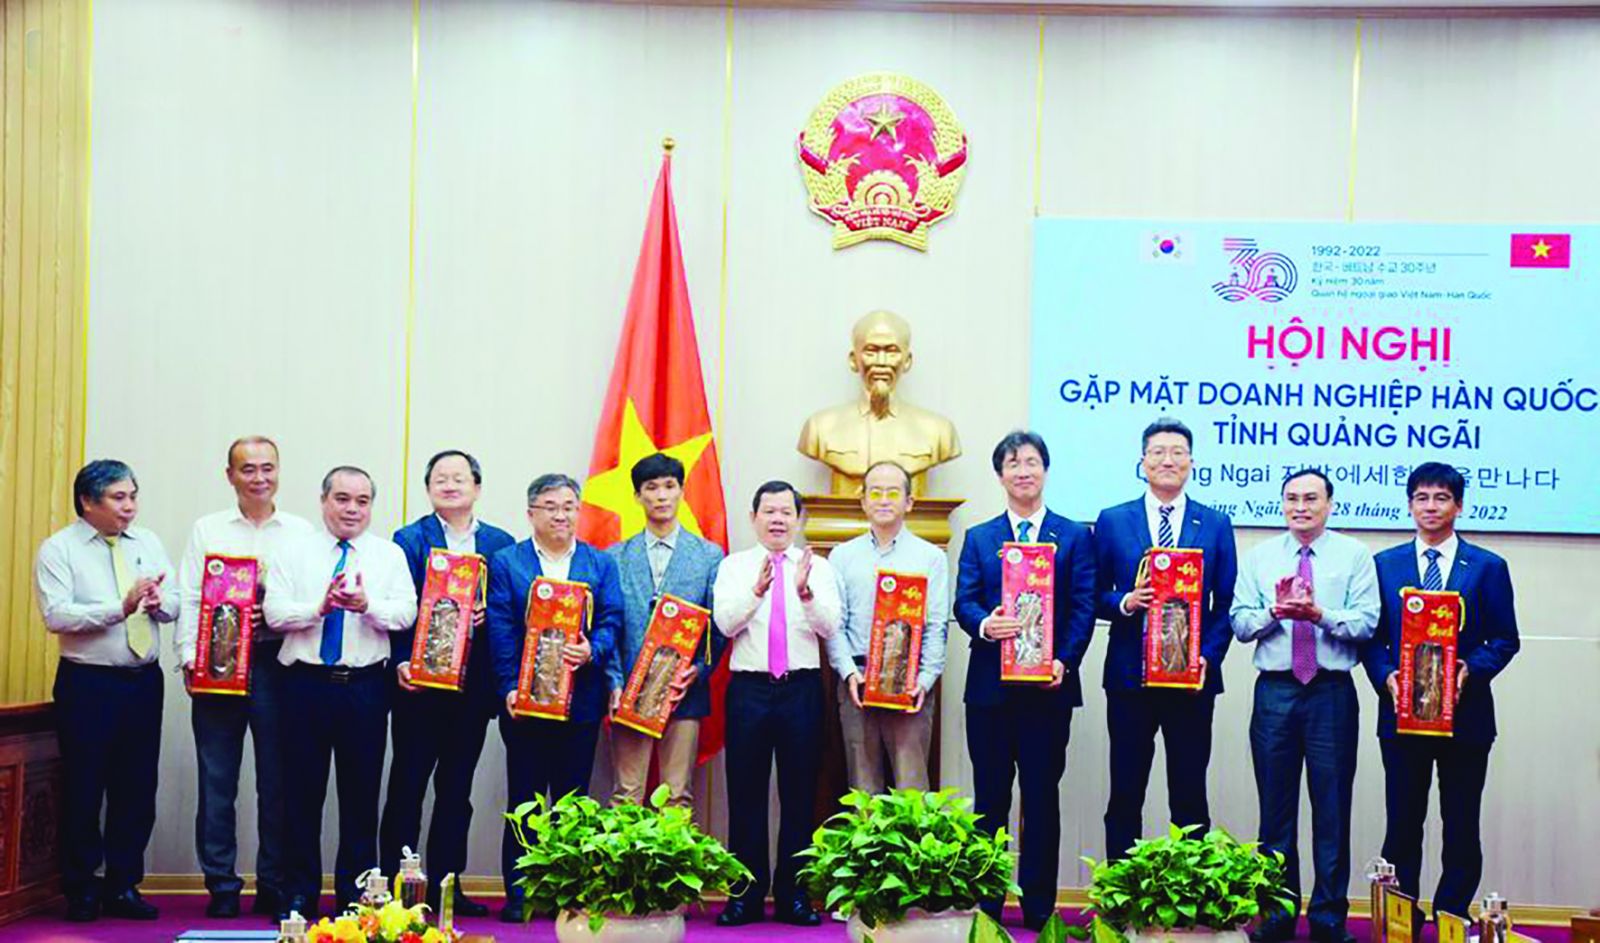 <p/>Gặp mặt các doanh nghiệp Hàn Quốc tại Quảng Ngãi nhân kỷ niệm 30 năm thiết lập quan hệ ngoại giao Việt Nam - Hàn Quốc. Ảnh: Ánh Nguyệt